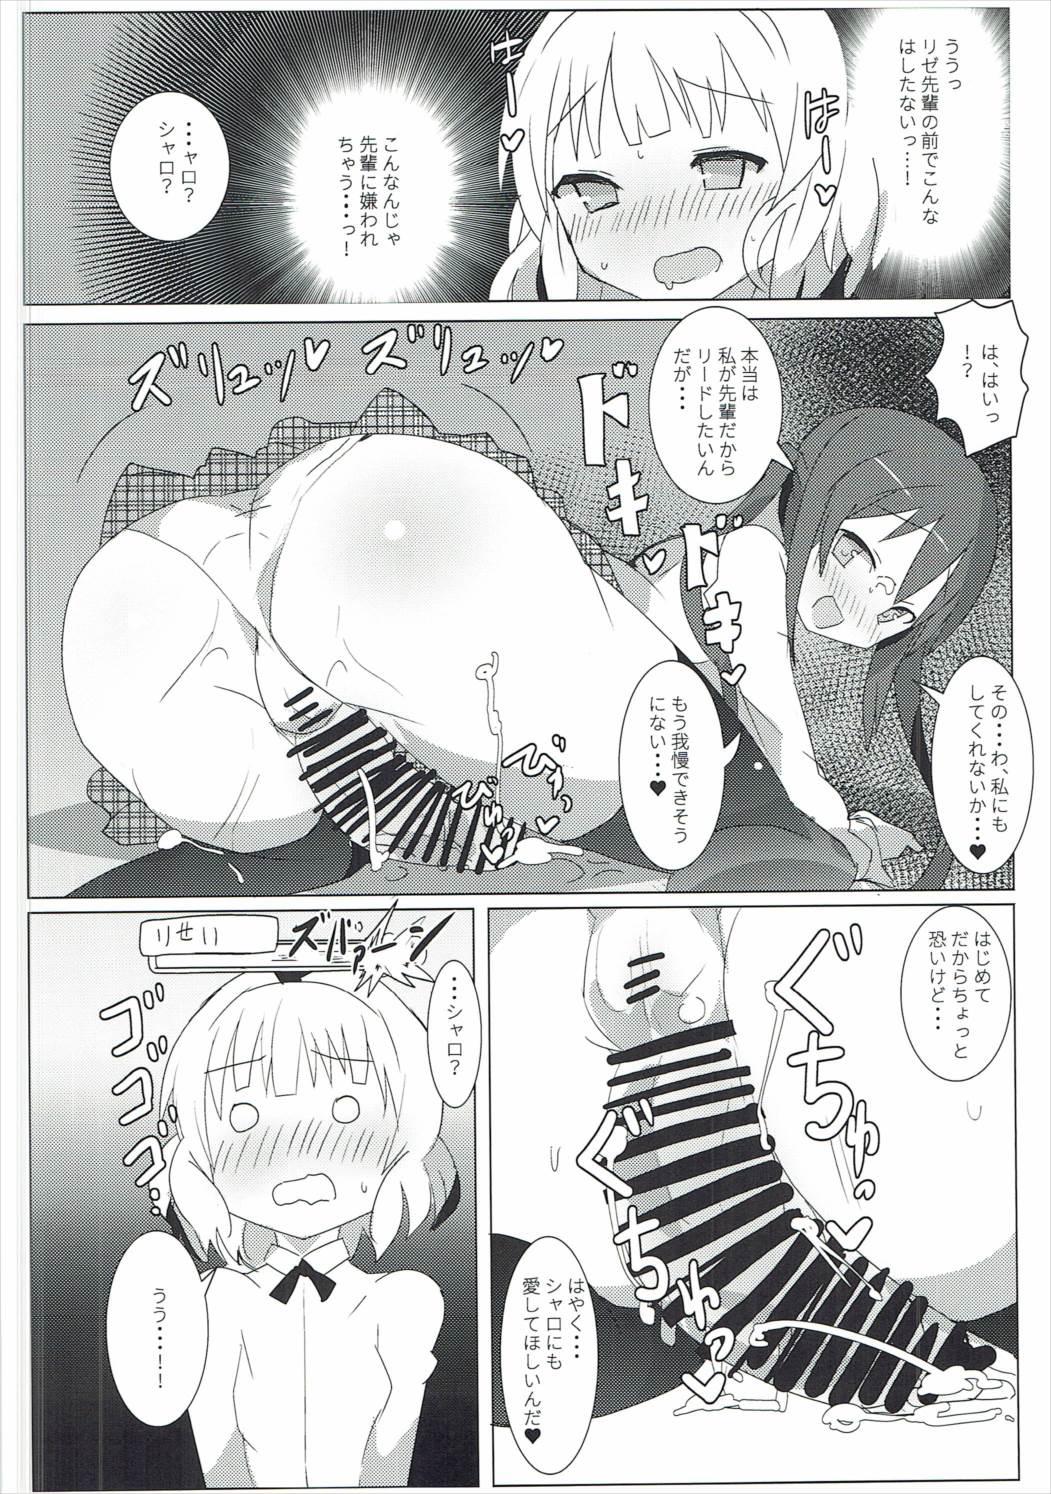 Breeding Shinya no Dokidoki Blend - Gochuumon wa usagi desu ka Gaydudes - Page 5